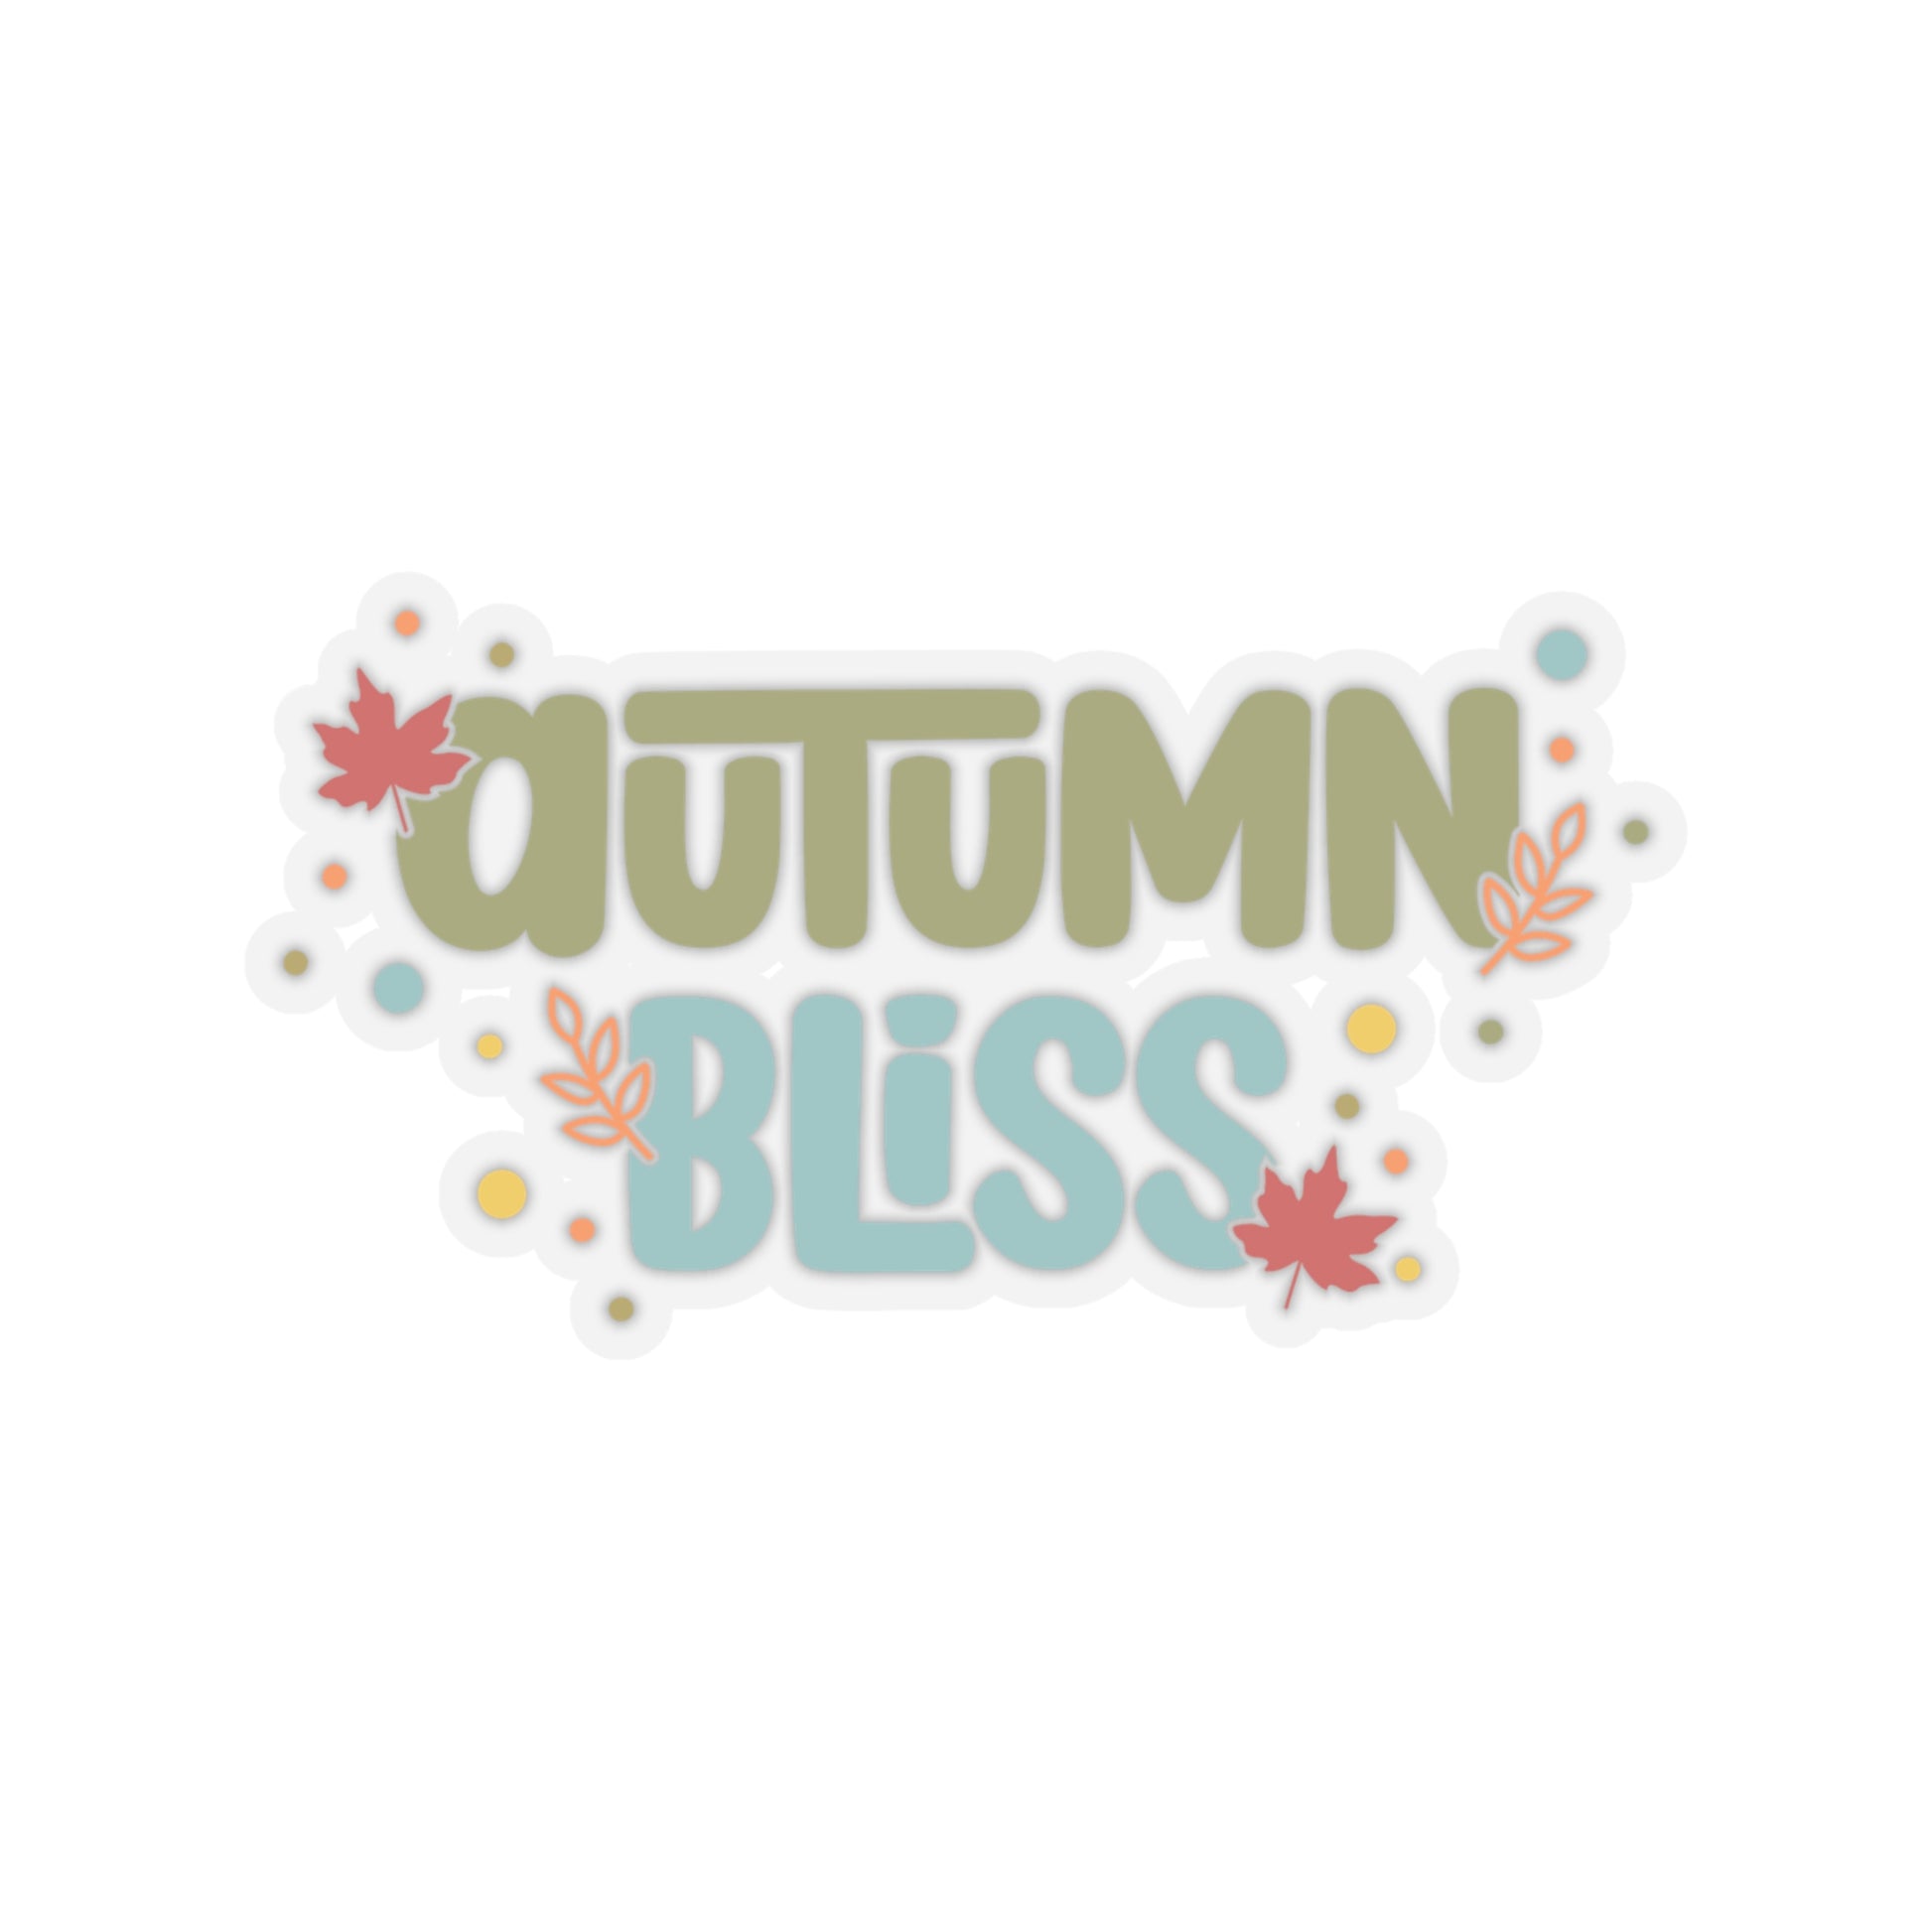 Autumn Bliss Sticker - Fall Theme Sticker